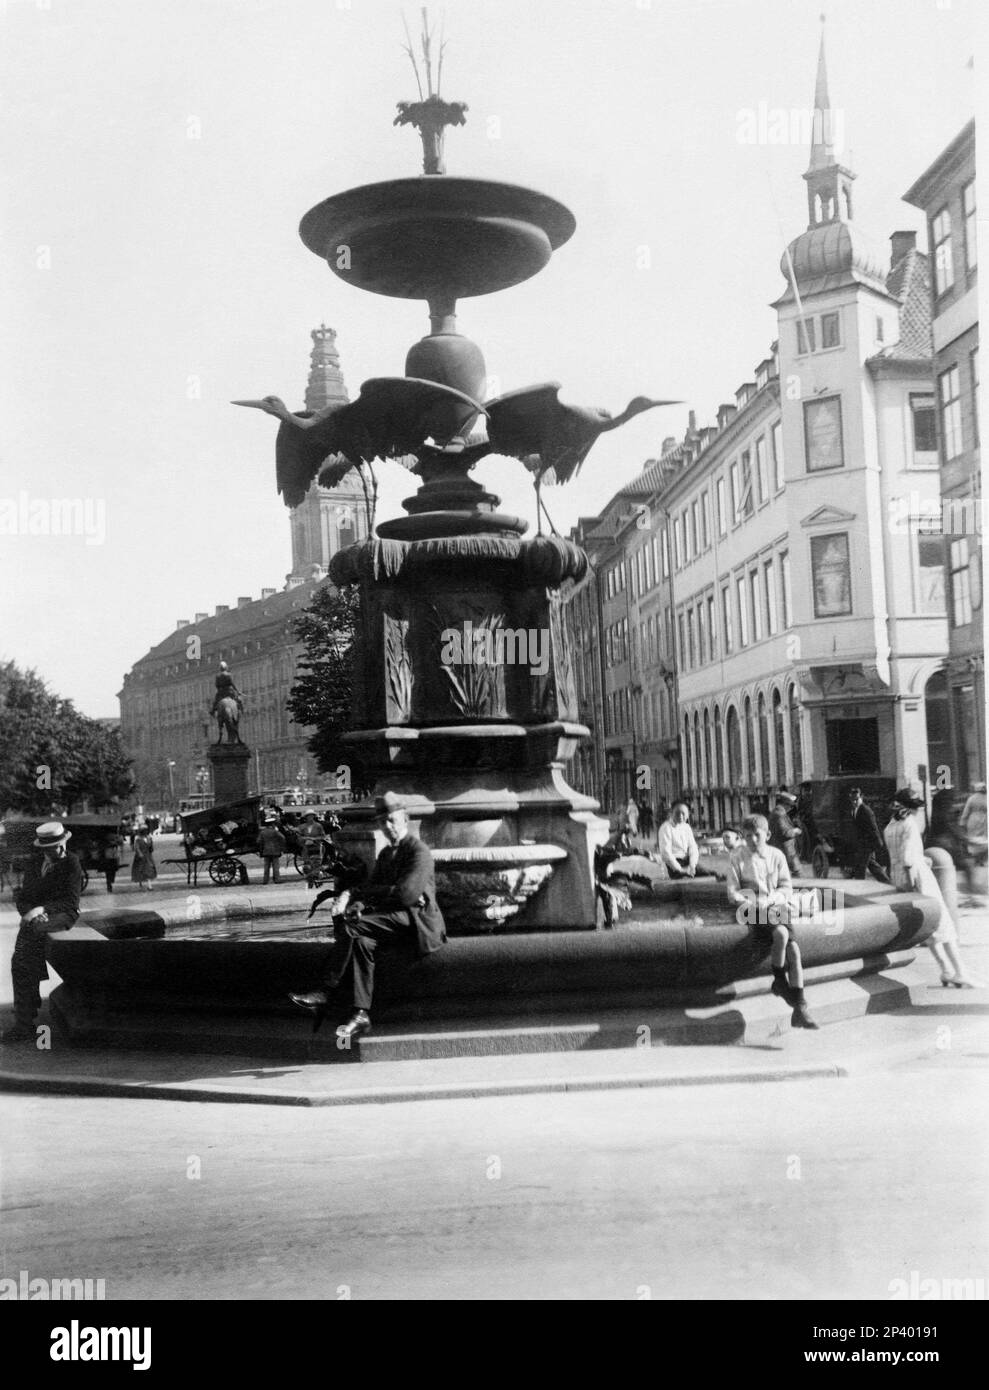 1920's , Copenhagen , Denmark : The STORKESPRINGVANDET fountain ( 1894 -  La Fontana della Cicogna ) on AMARGERTORV avenue  - DANIMARCA - GEOGRAFIA - vacanze - holidays - vacanza - TURISMO - TOURISM - SCANDINAVIA - COPENAGHEN  - scultura - sculpture - FOTO STORICHE - HISTORY - stork  ---- Archivio GBB Stock Photo